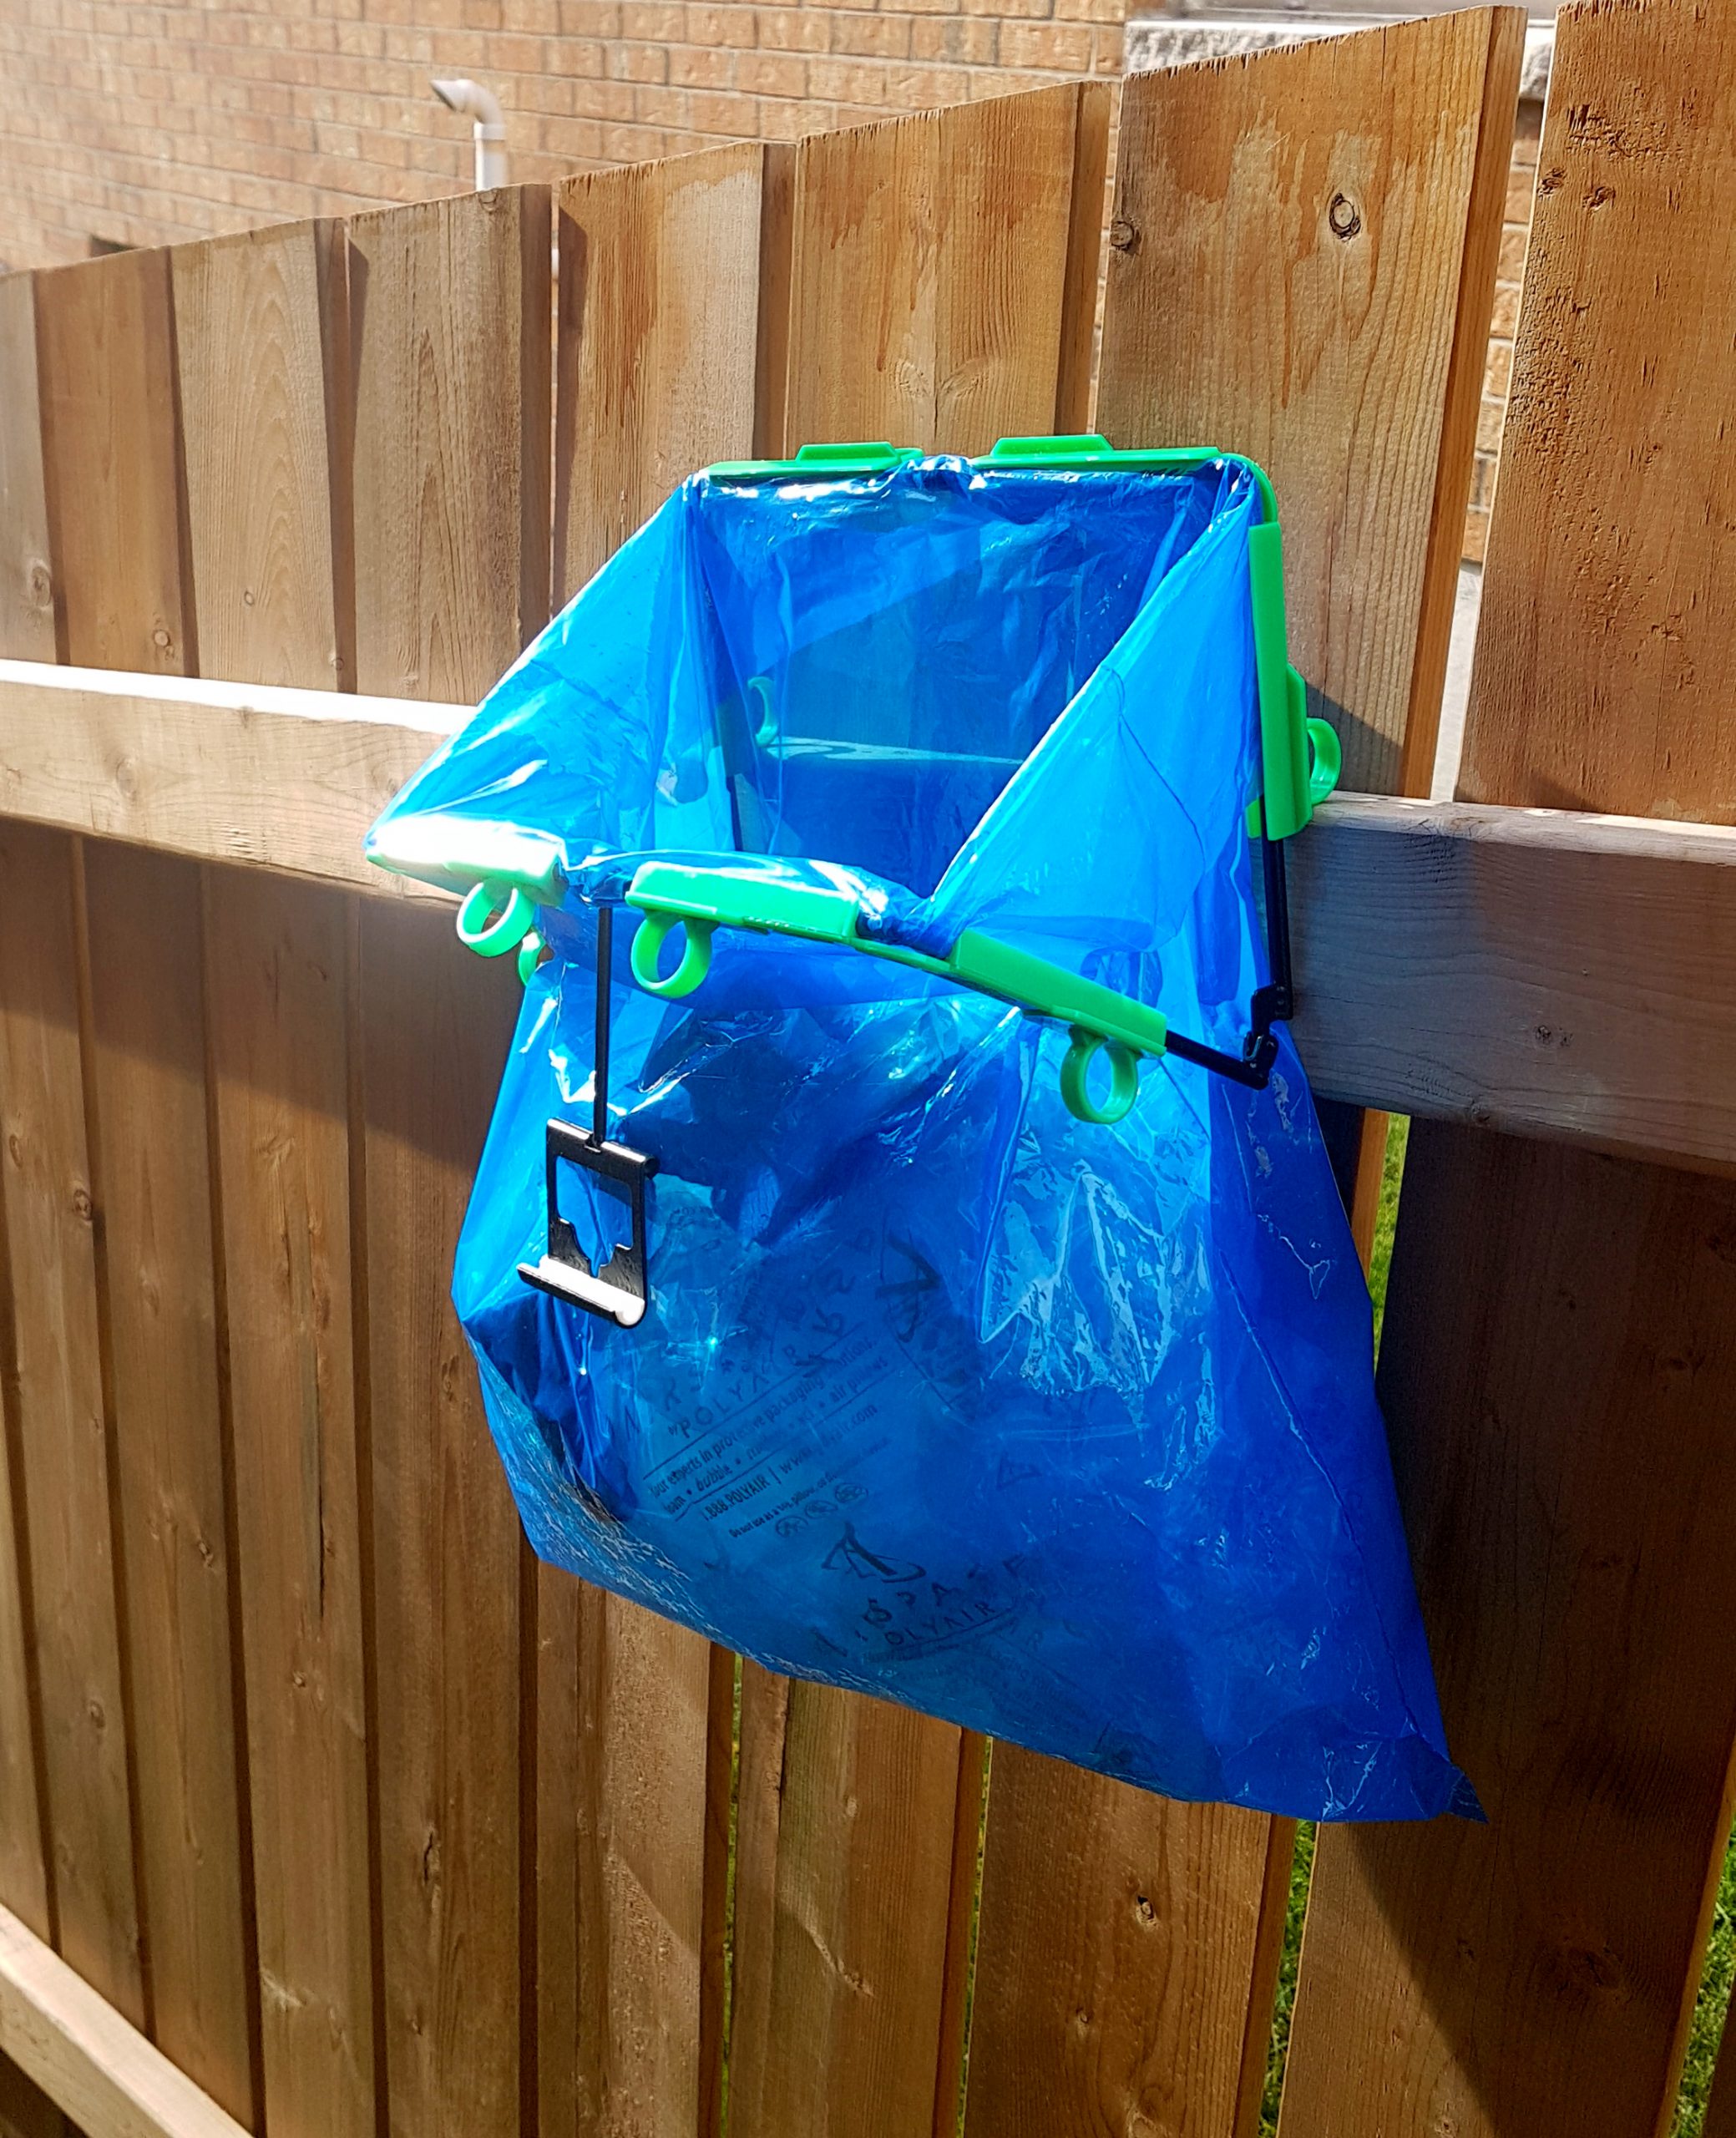 K2 Portable Garbage Trash Bag Holder Incognito Cabinets Cloth Rack K2B Blue 